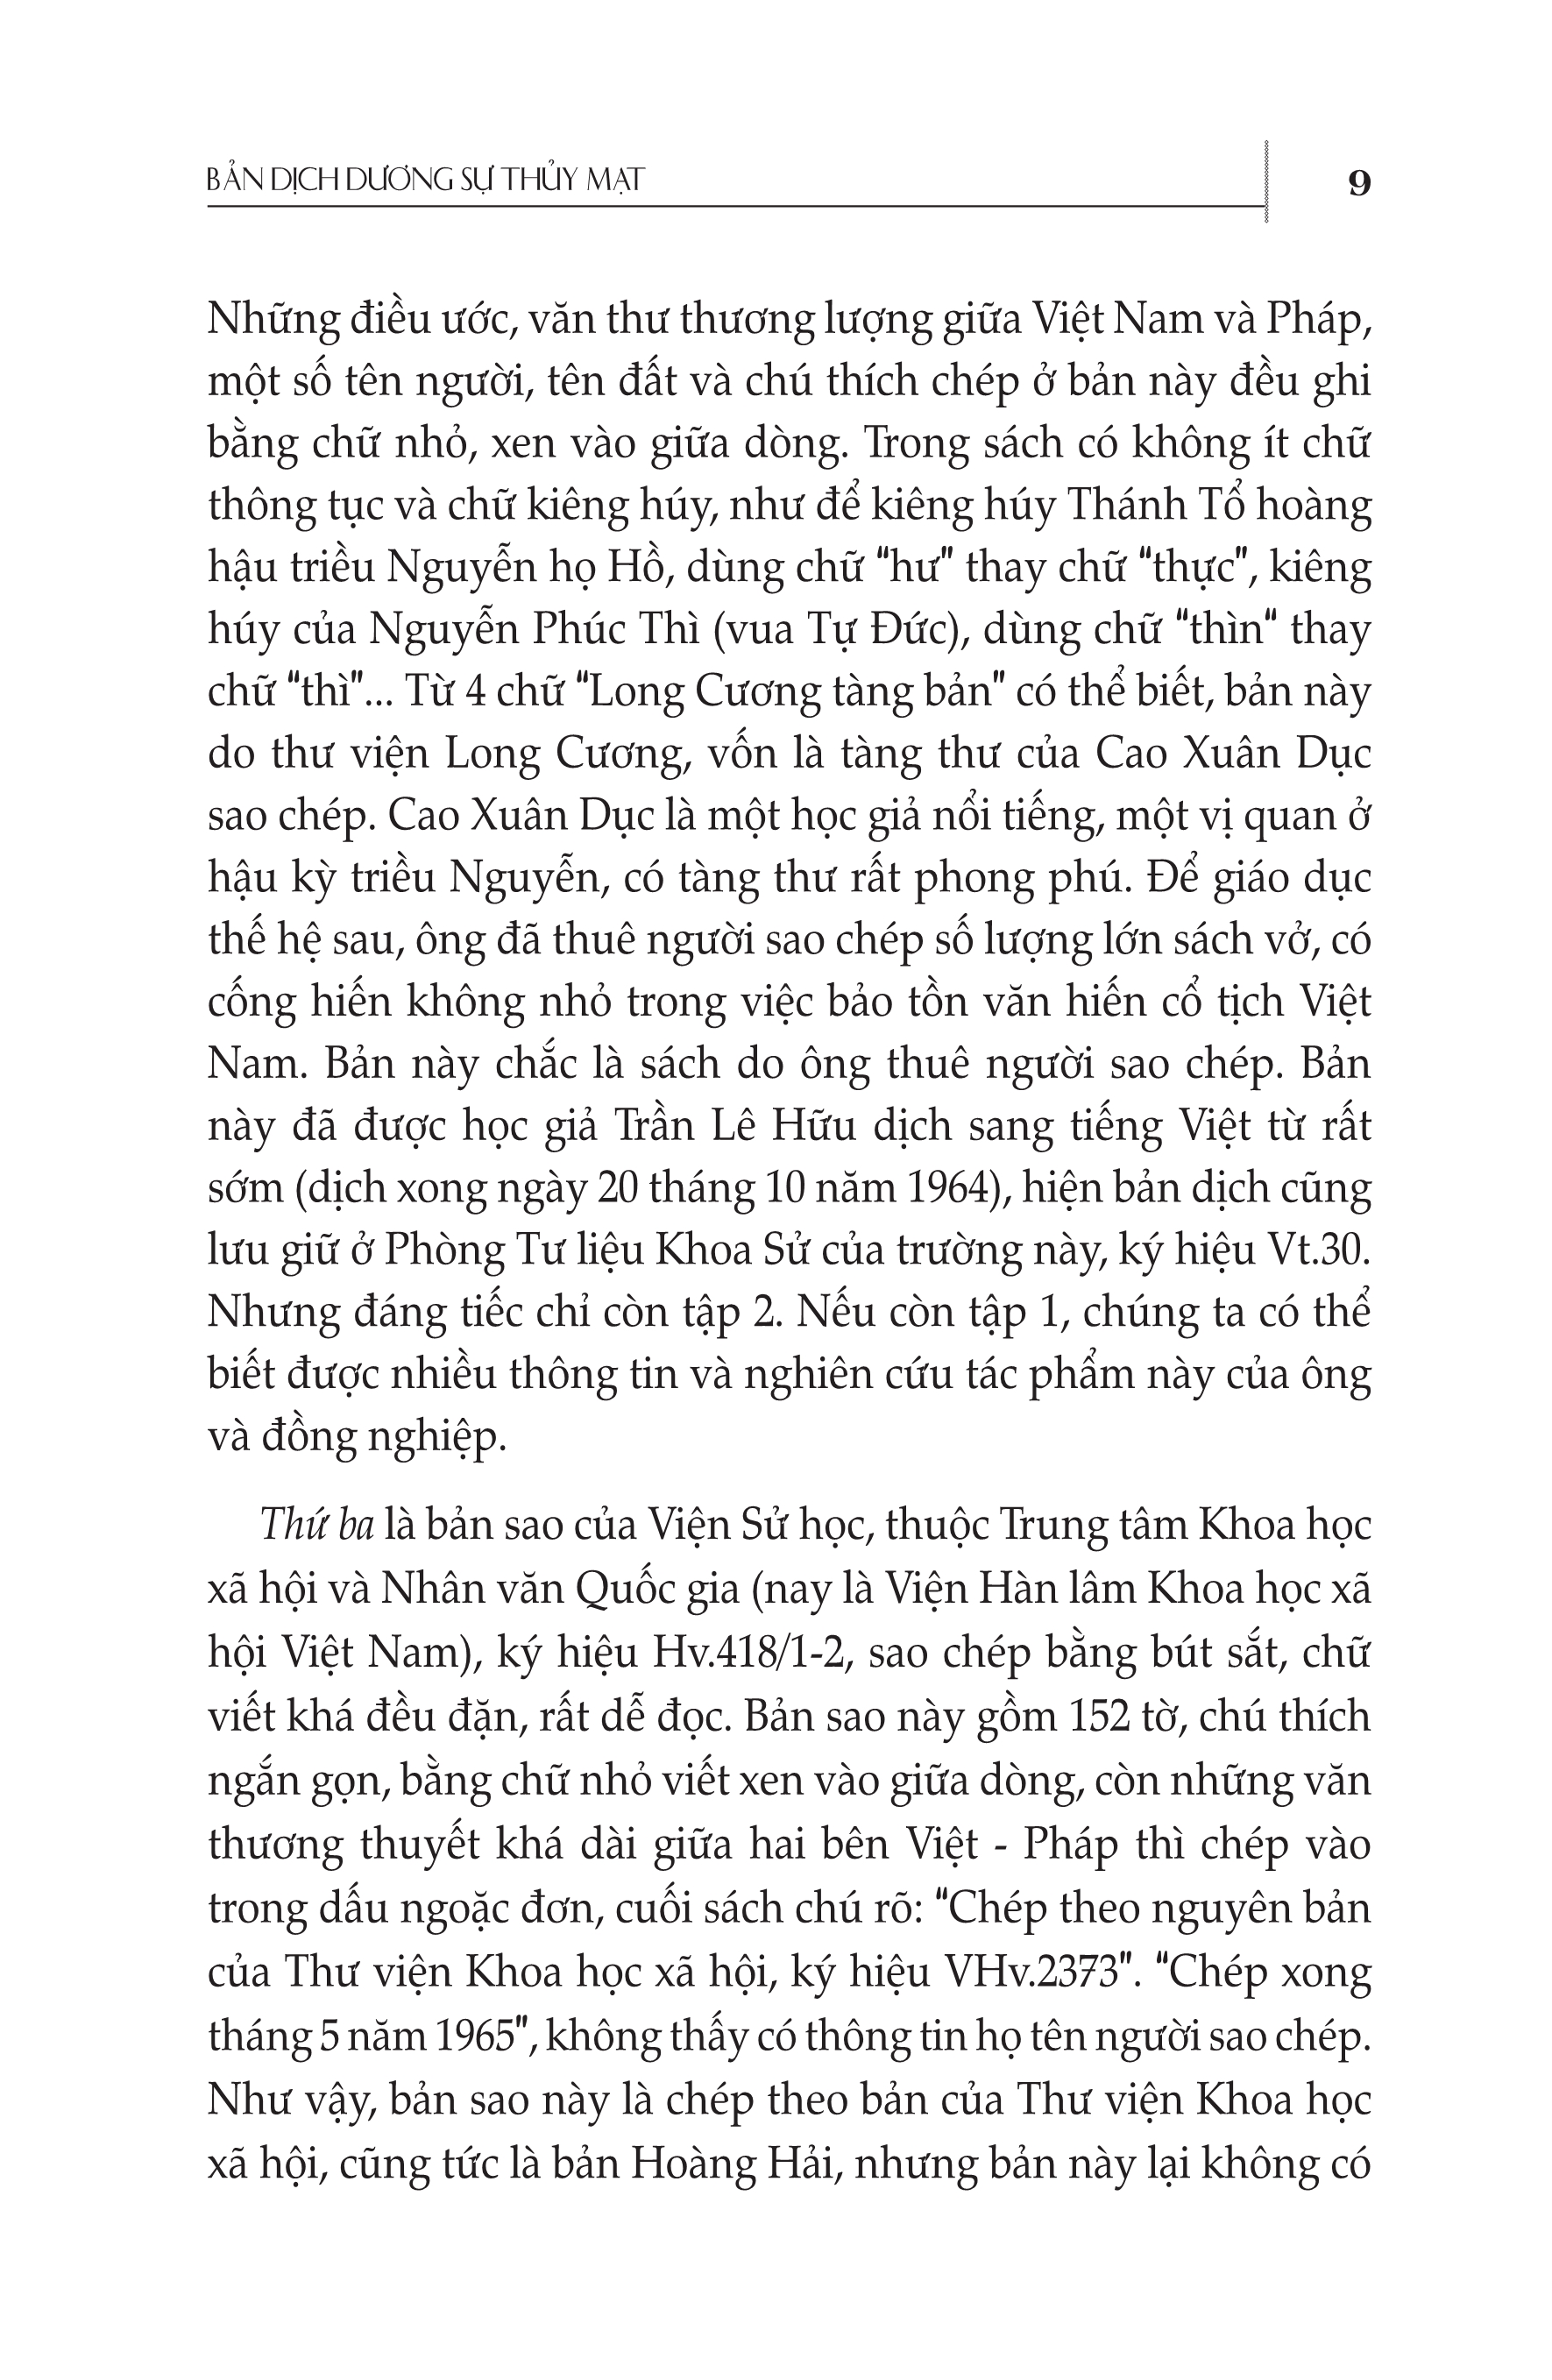 Bộ Sưu Tập Sử Liệu Pháp Xâm Lược Việt Nam (1847 - 1887) - Bản Dịch Trọn Vẹn Của Dương Sự Thủy Mạt